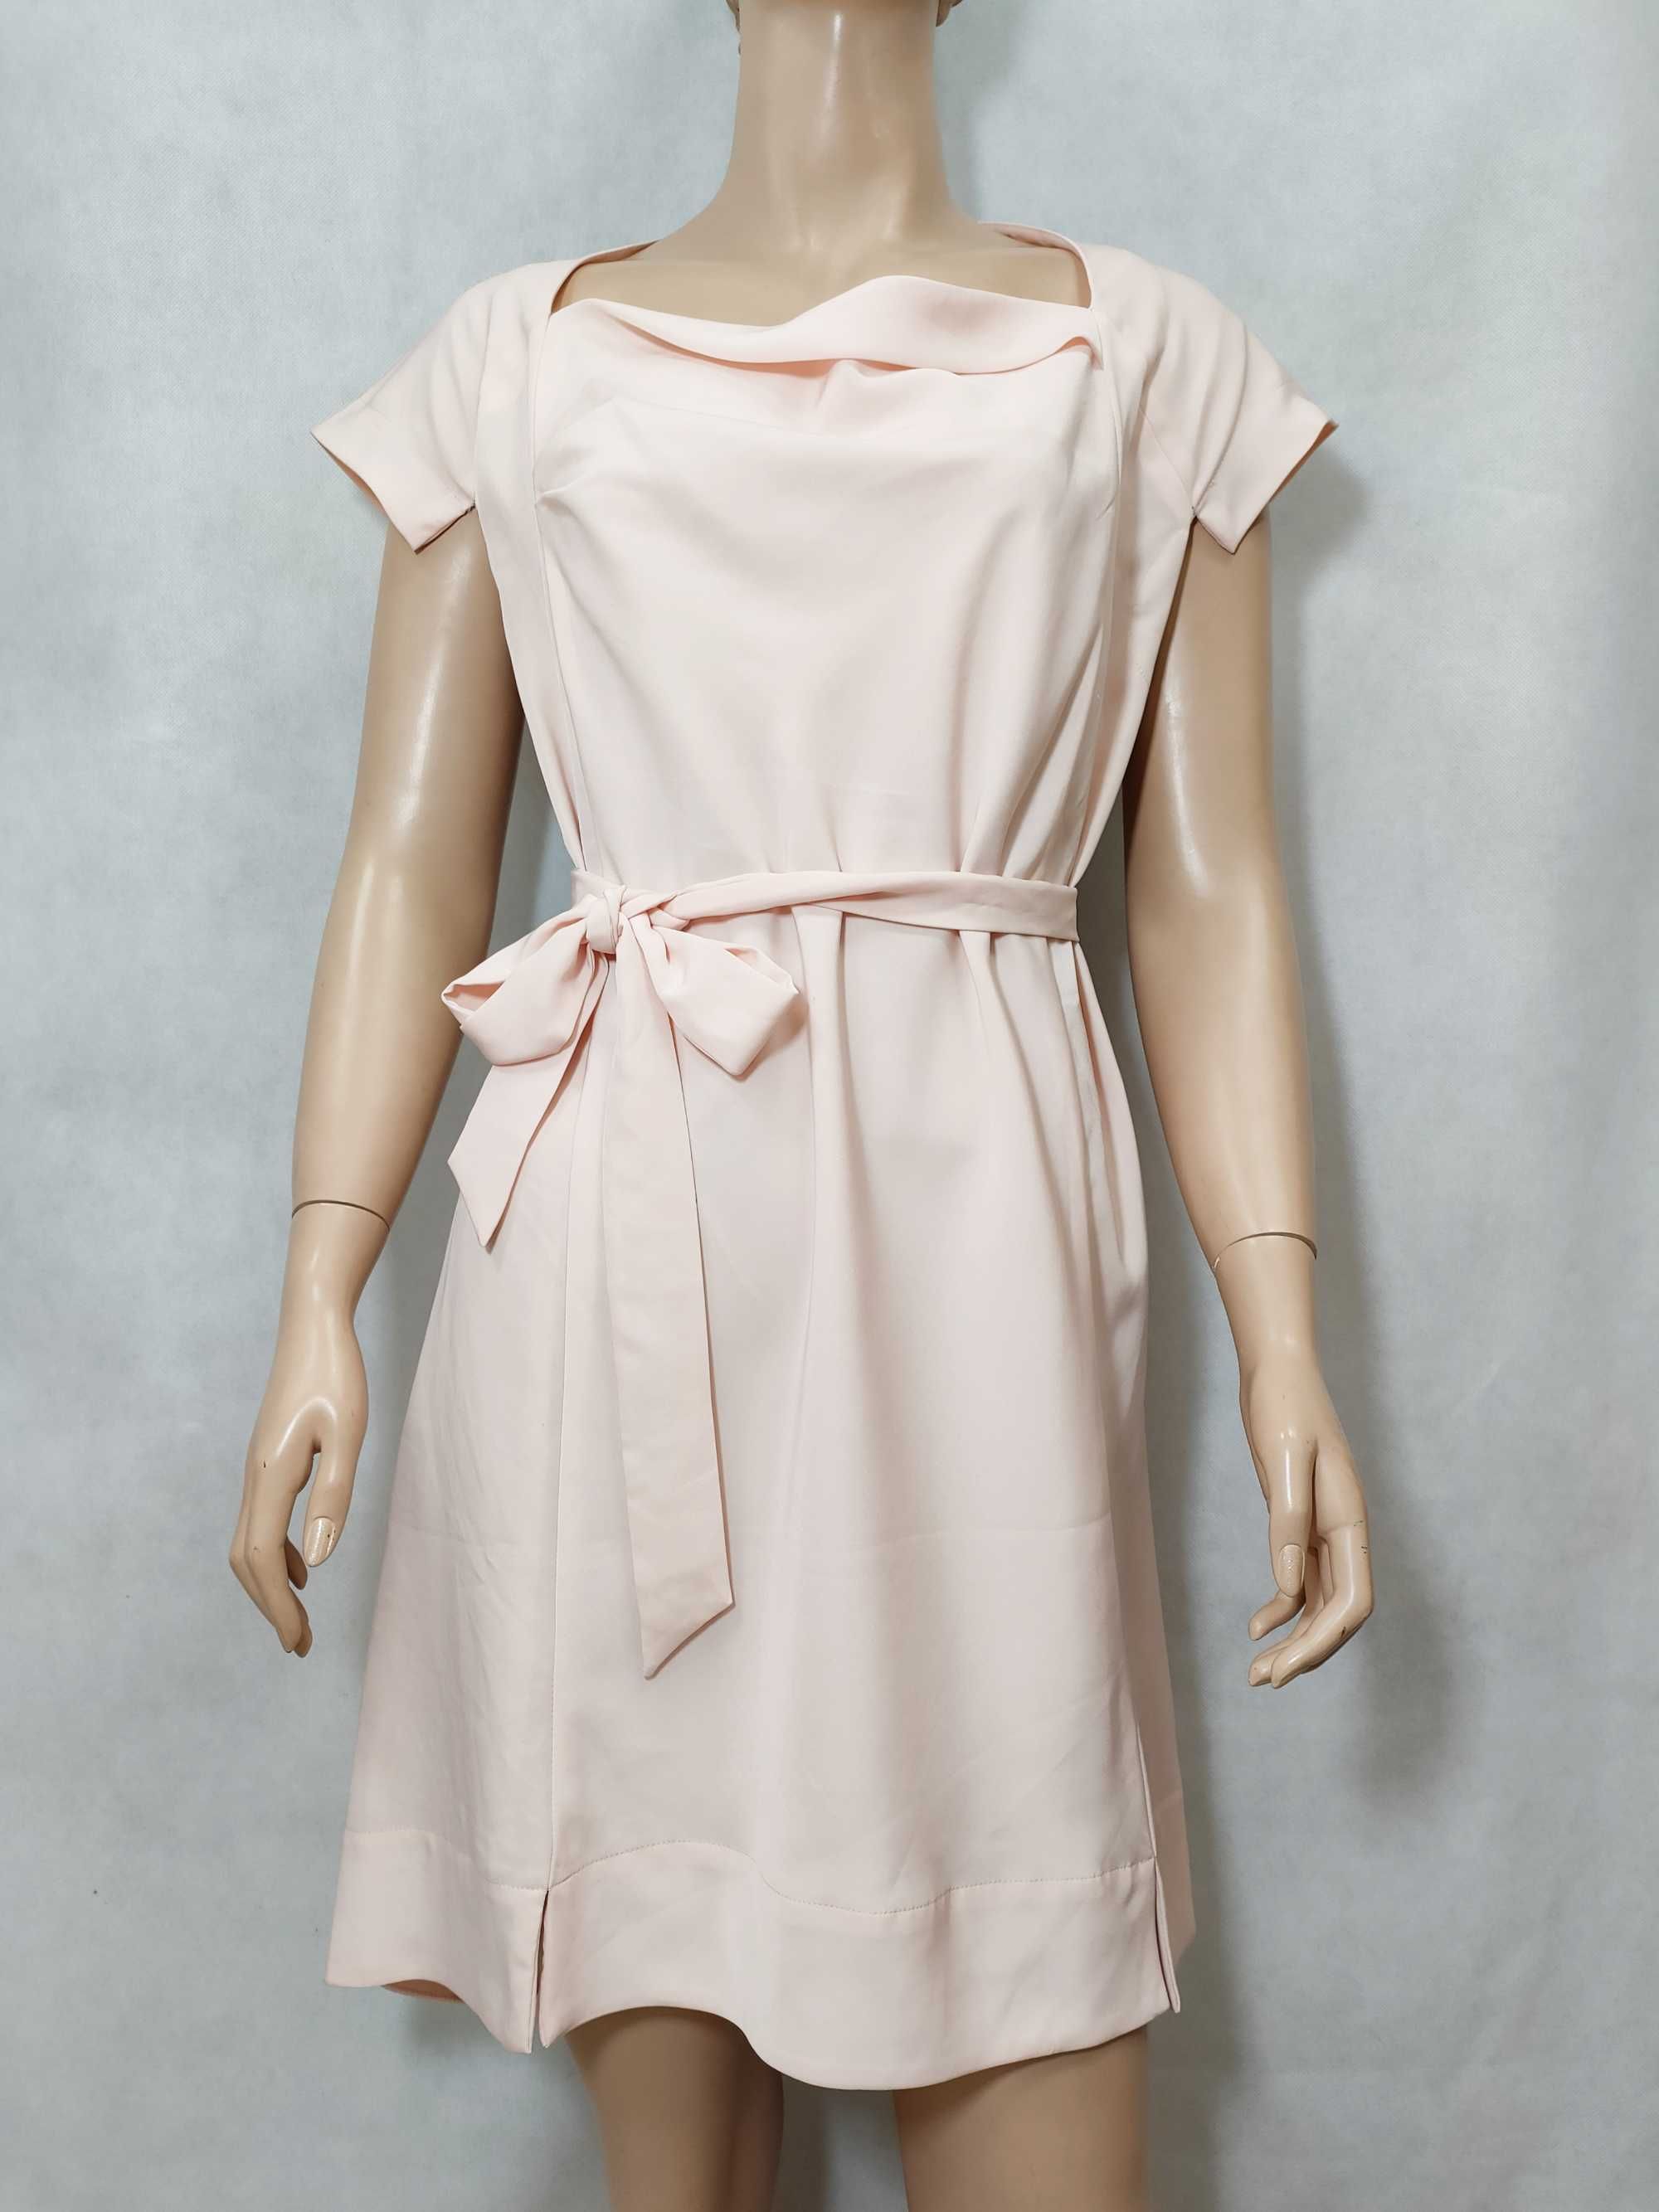 Sukienka wizytowa elegancka pudrowy róż klasyczna 48 SU0239C